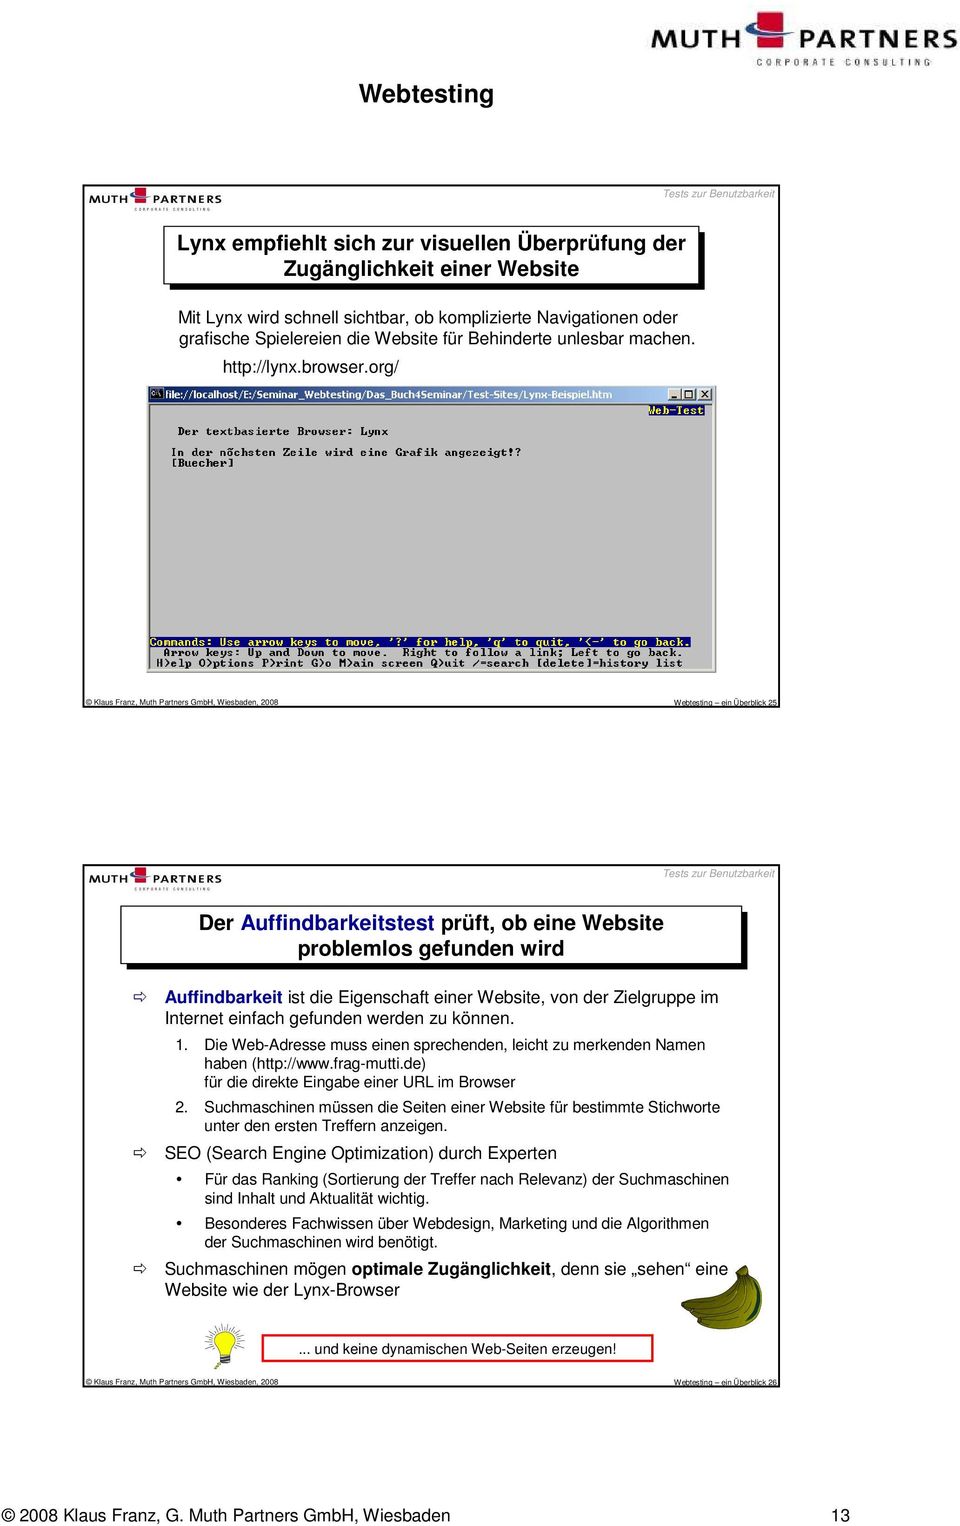 org/ Klaus Franz, Muth Partners GmbH, Wiesbaden, 2008 Webtesting ein Überblick 25 Tests zur Benutzbarkeit Der Auffindbarkeitstest prüft, ob ob eine Website problemlos gefunden wird Auffindbarkeit ist